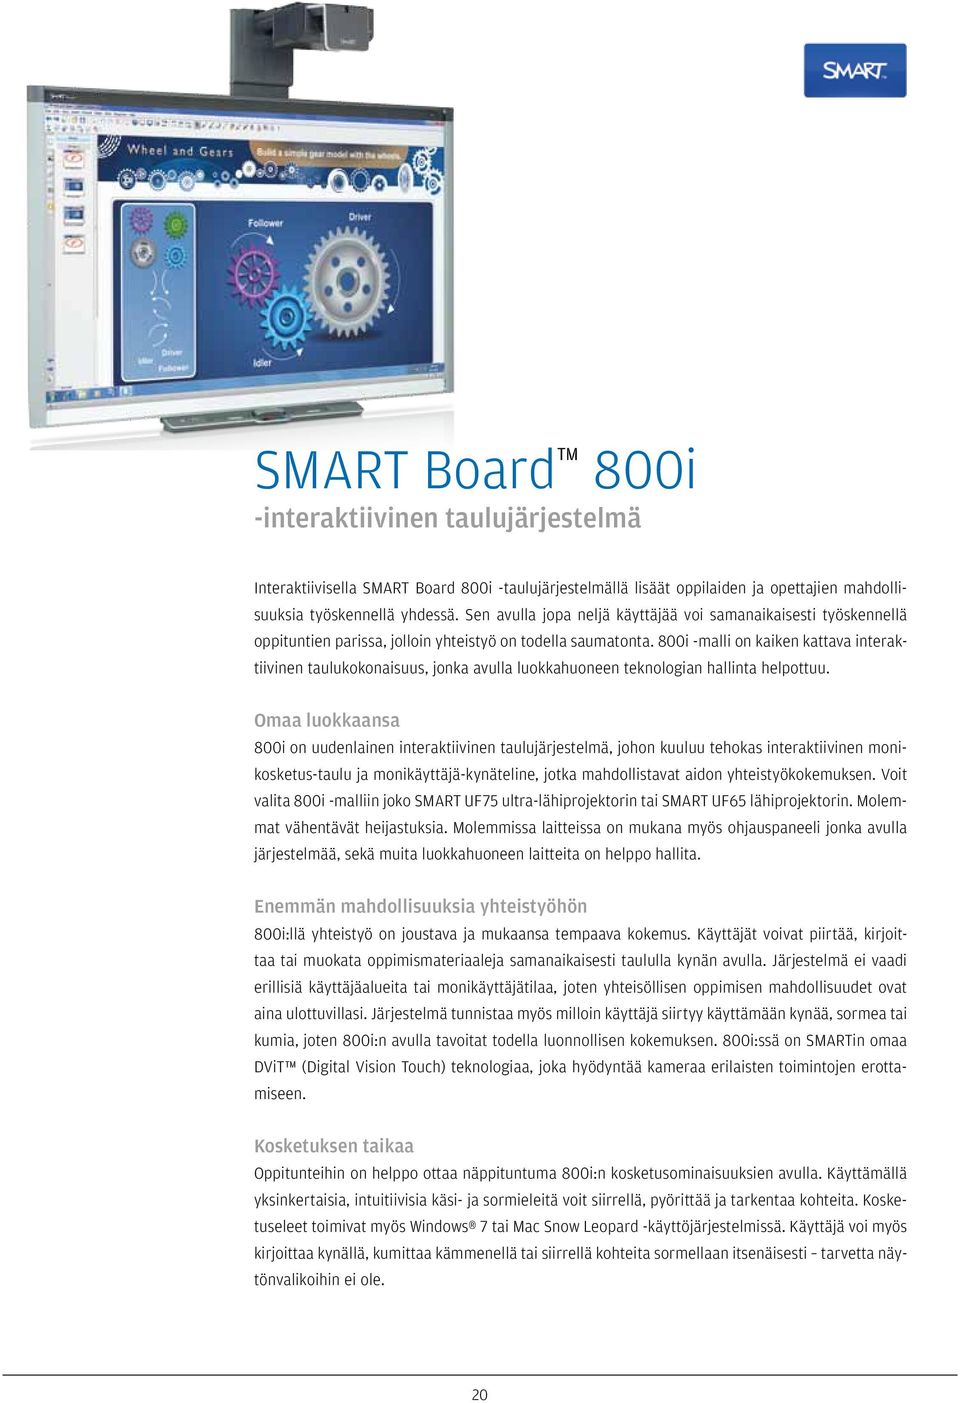 800i -malli on kaiken kattava interaktiivinen taulukokonaisuus, jonka avulla luokkahuoneen teknologian hallinta helpottuu.